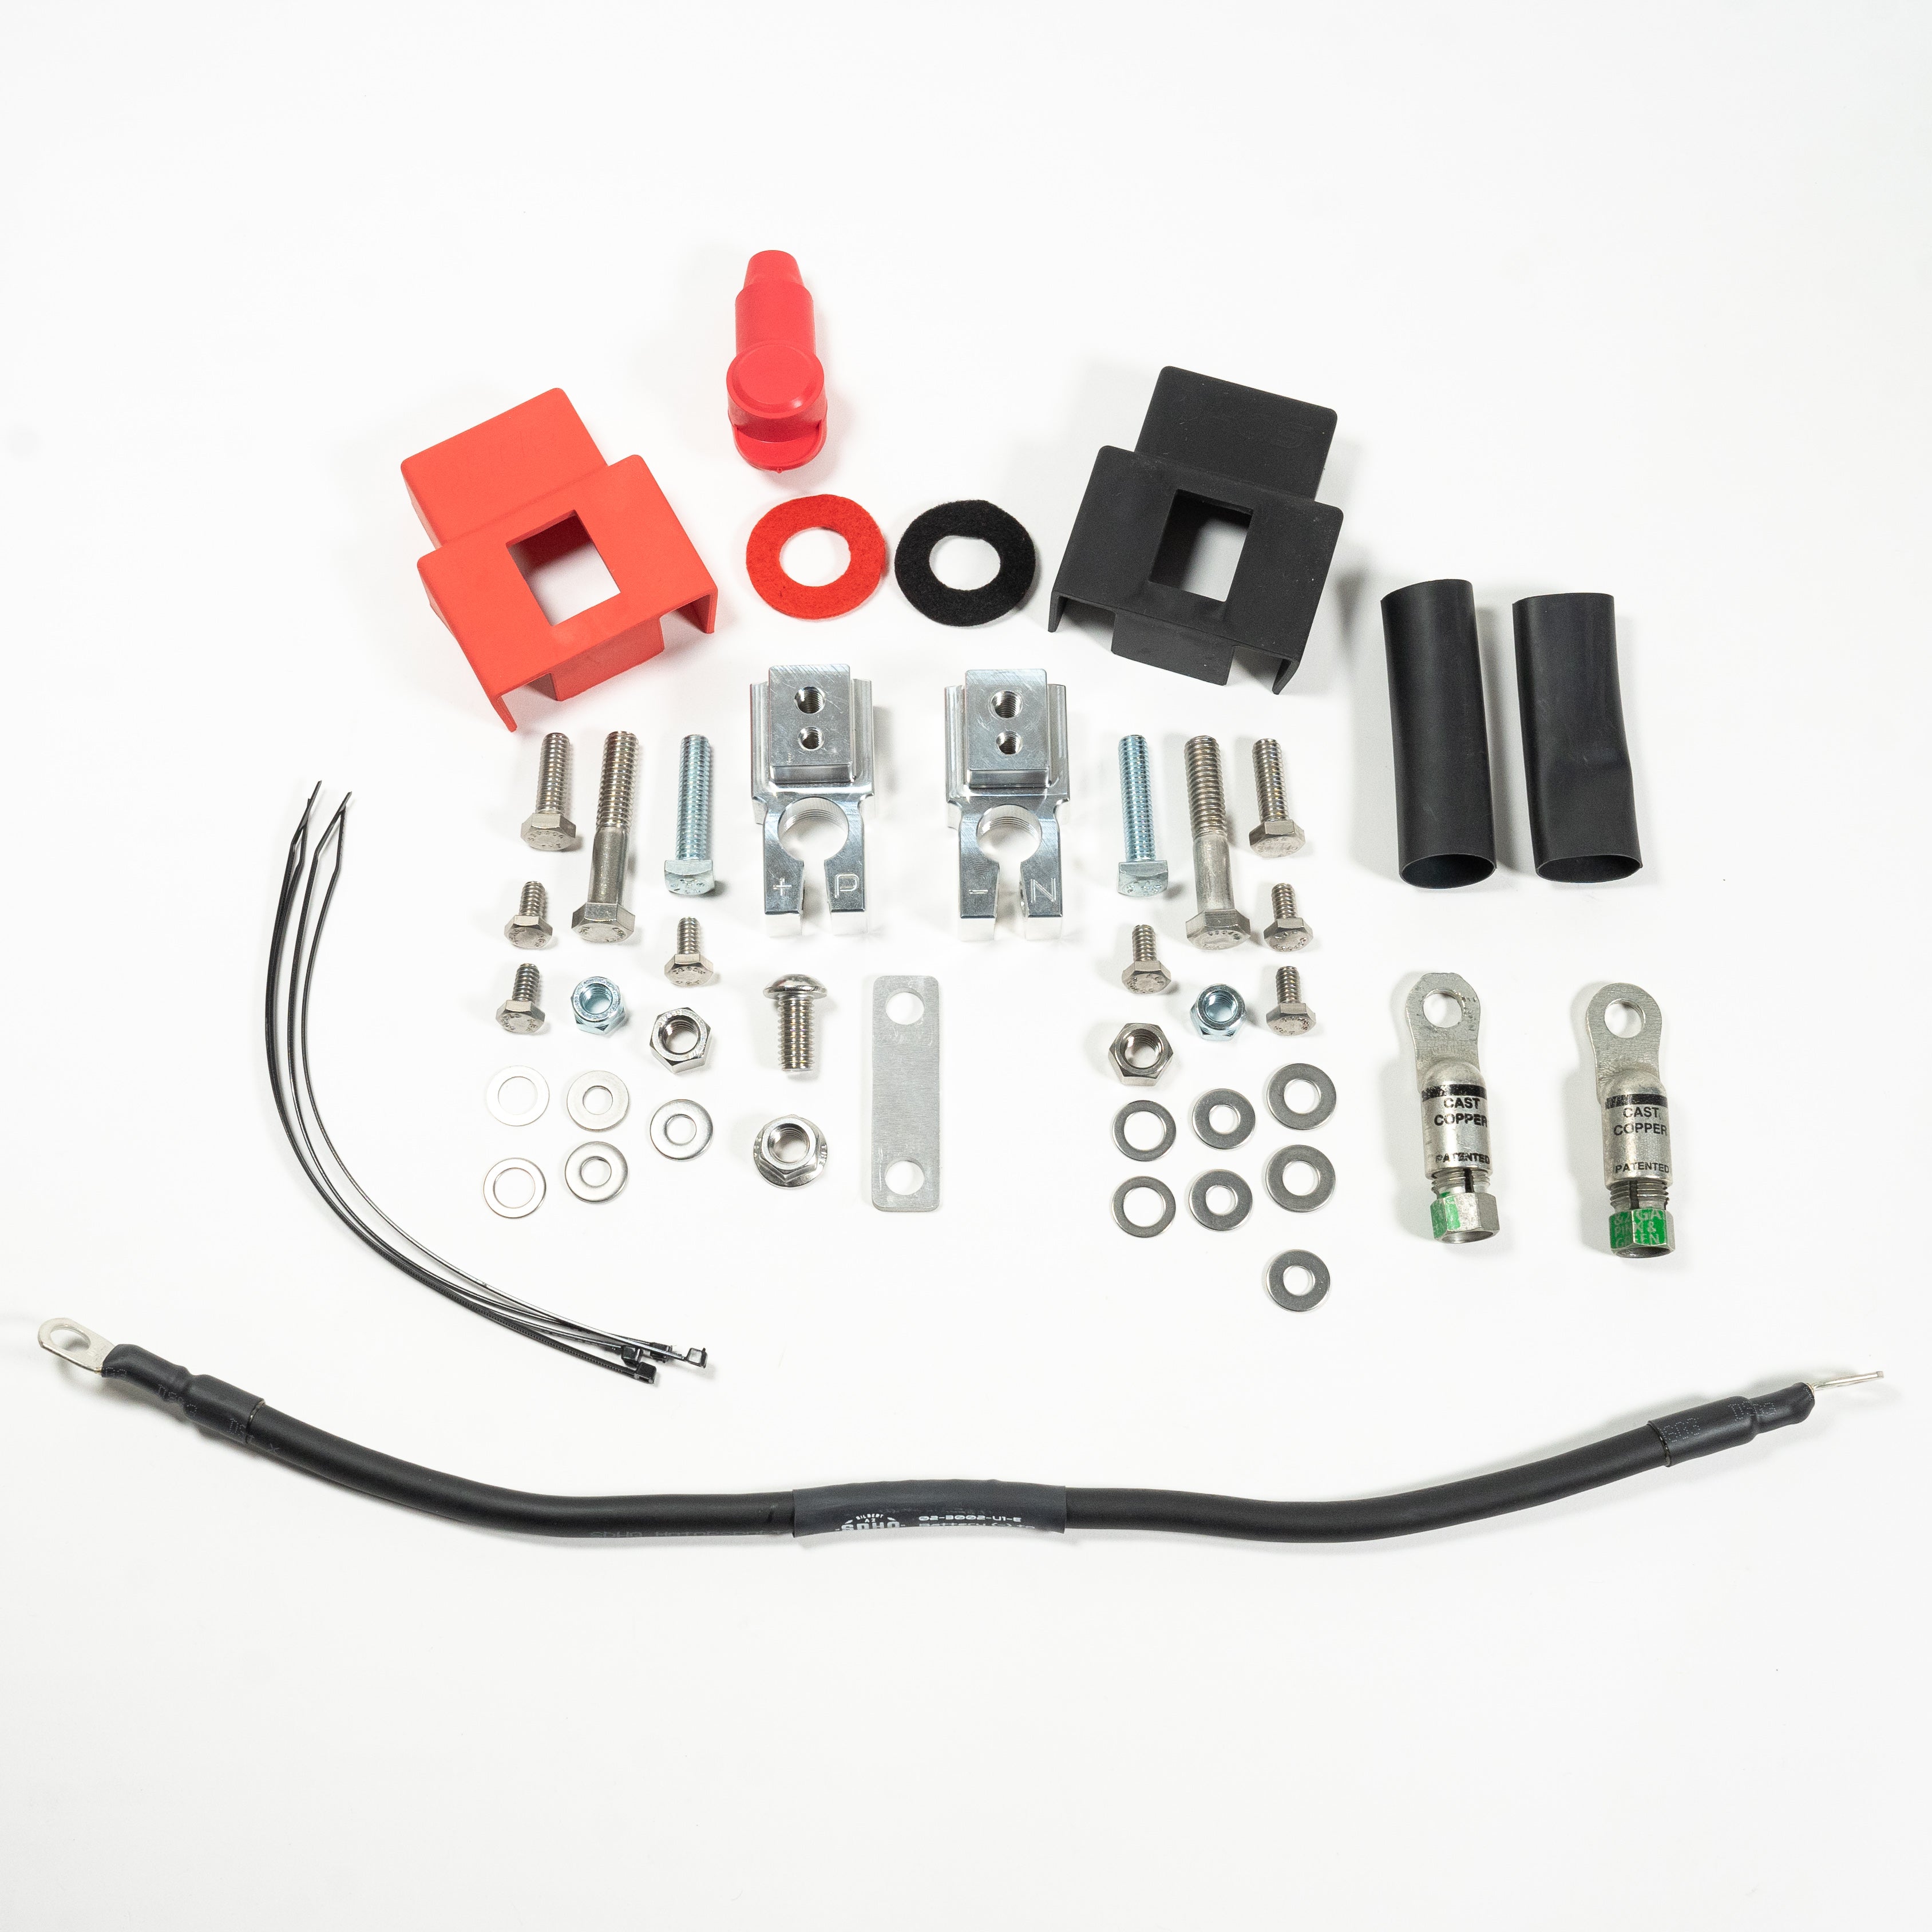  Plug N' Plate Acid Copper Kit : Automotive